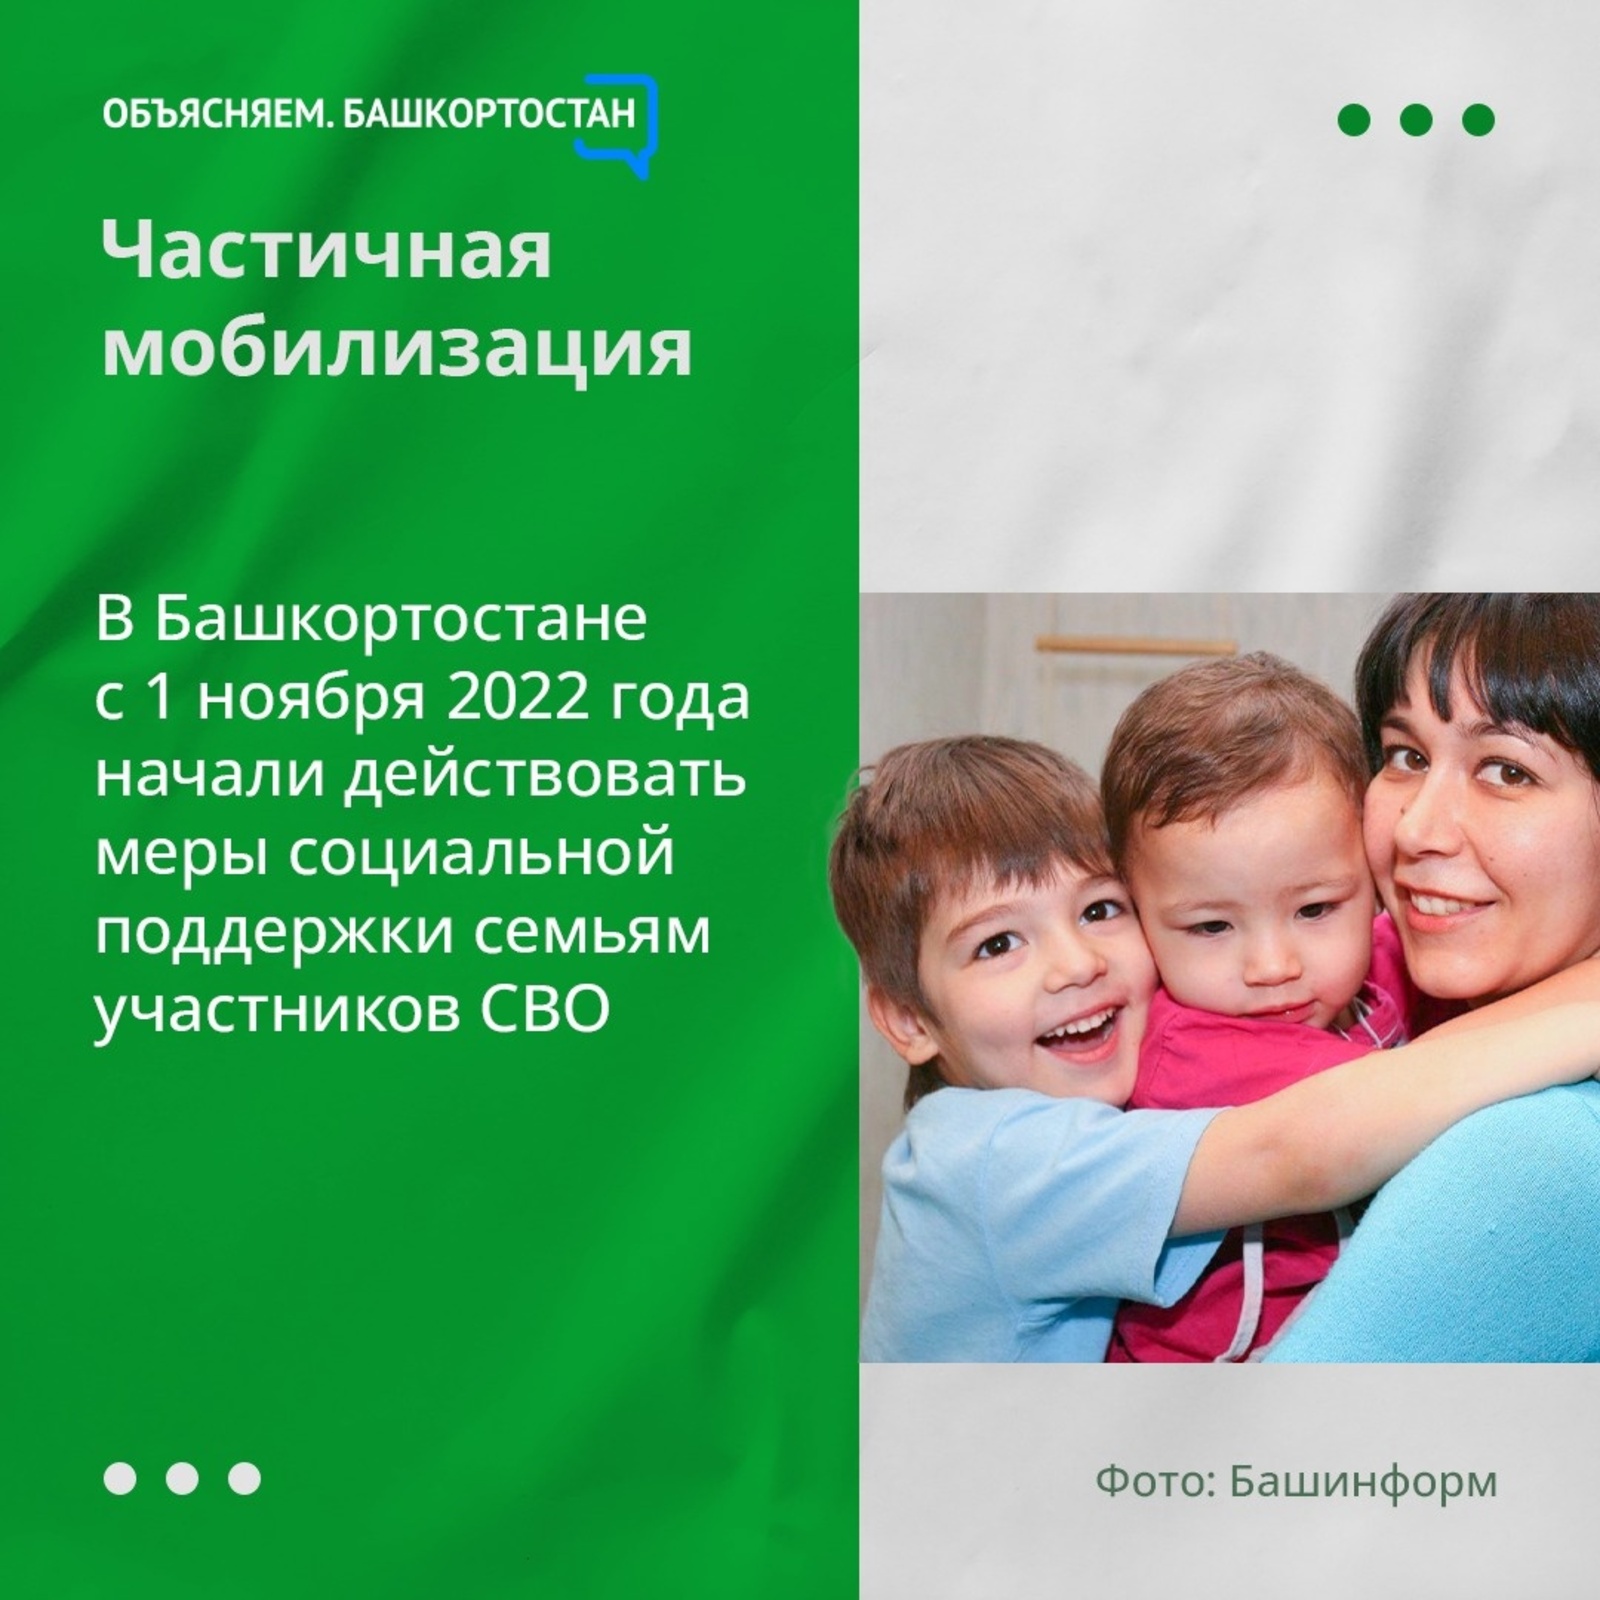 В Башкортостане с 1 ноября 2022 года начали действовать меры социальной поддержки семьям участников СВО